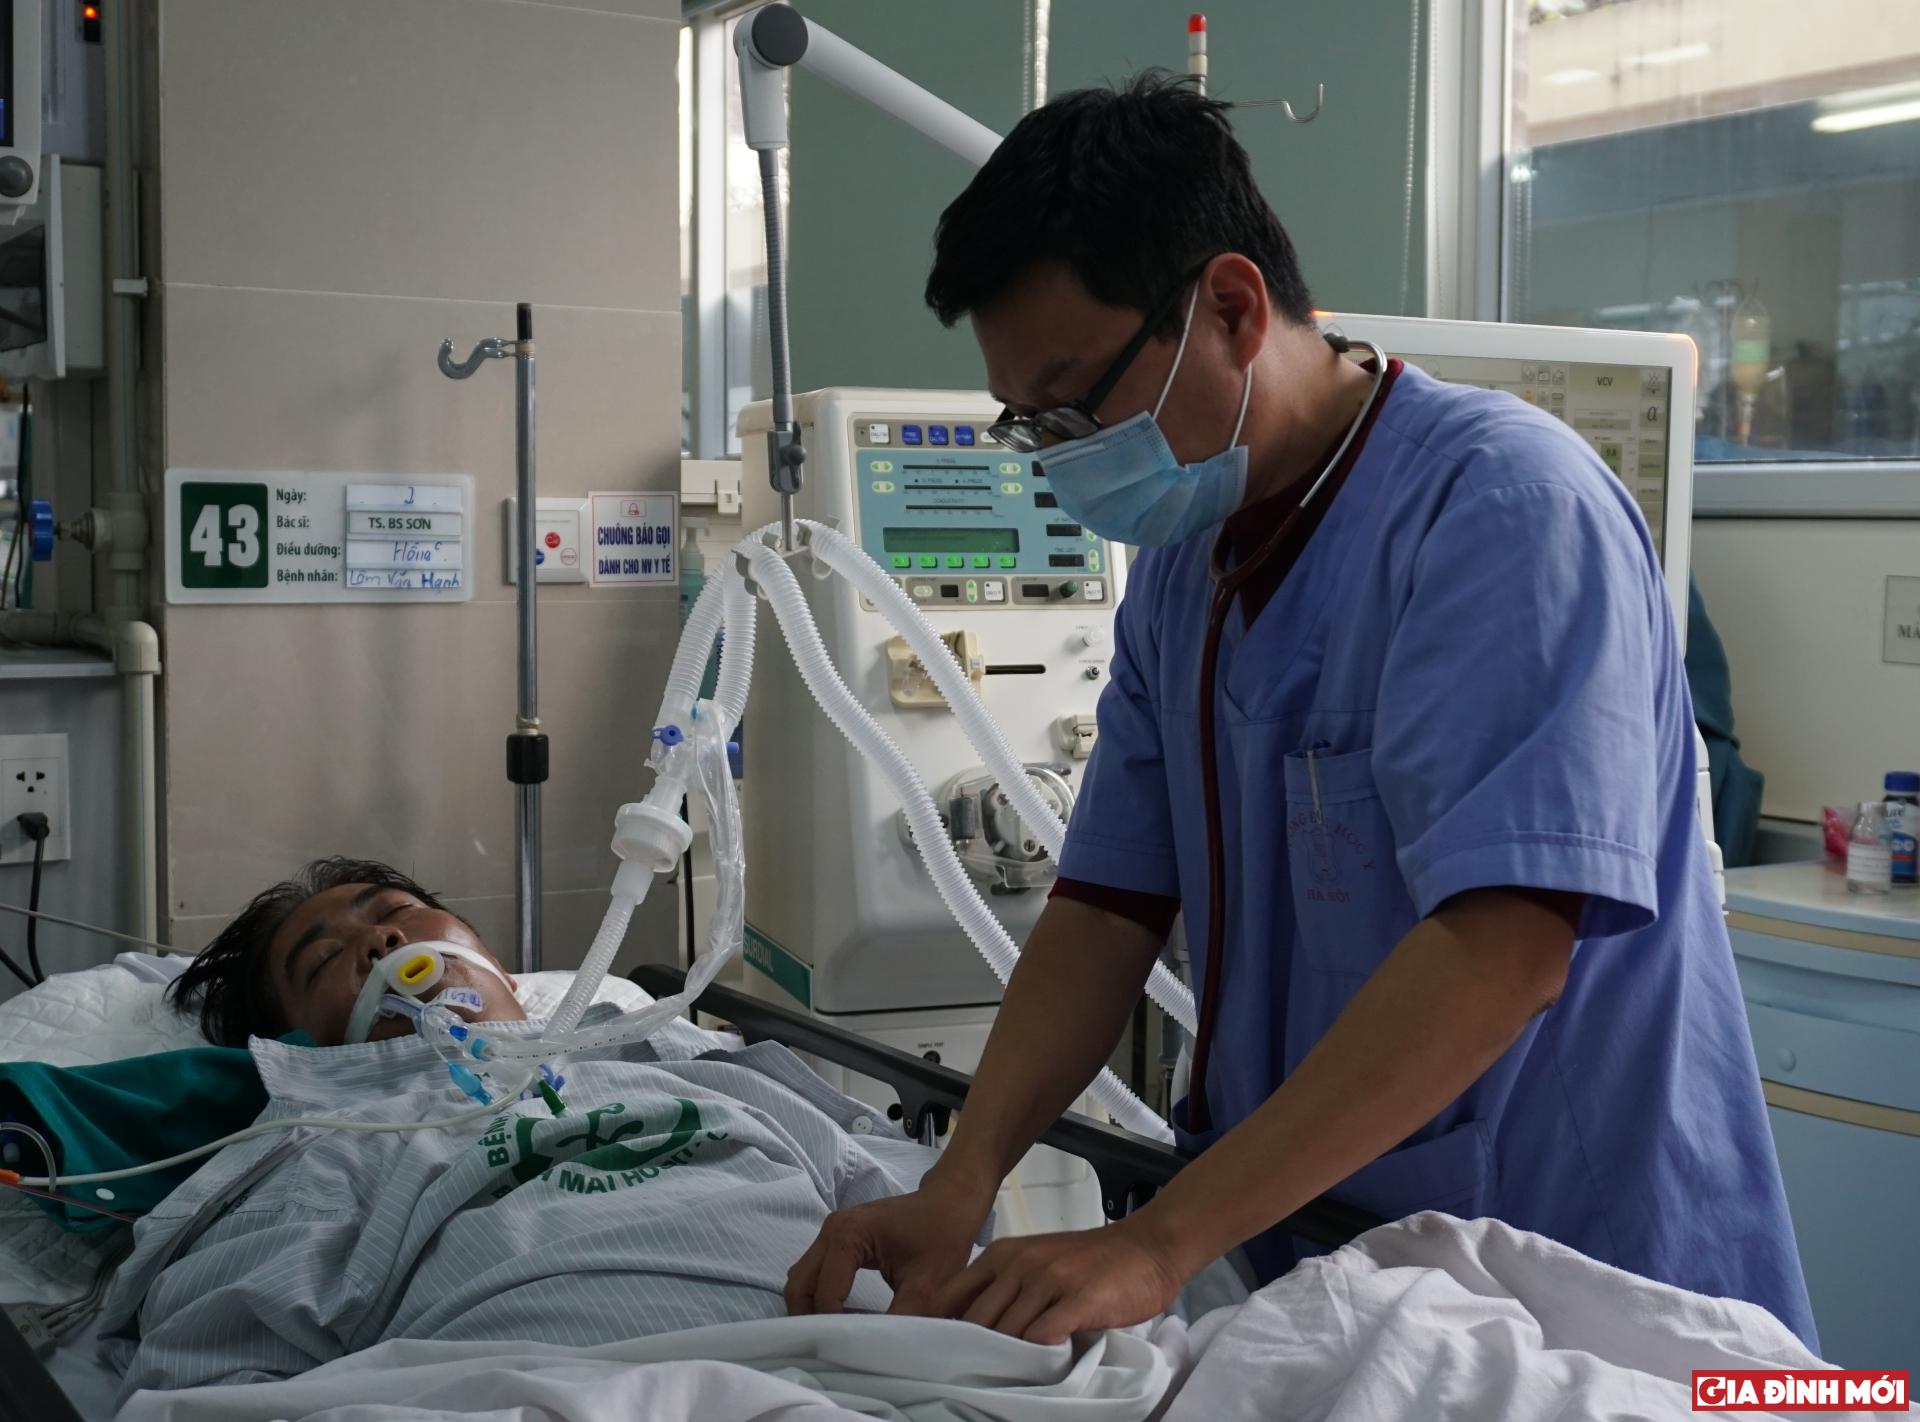 Bác sĩ Ngô Đức Hùng, khoa Cấp cứu A9, Bệnh viện Bạch Mai thăm khám cho bệnh nhân